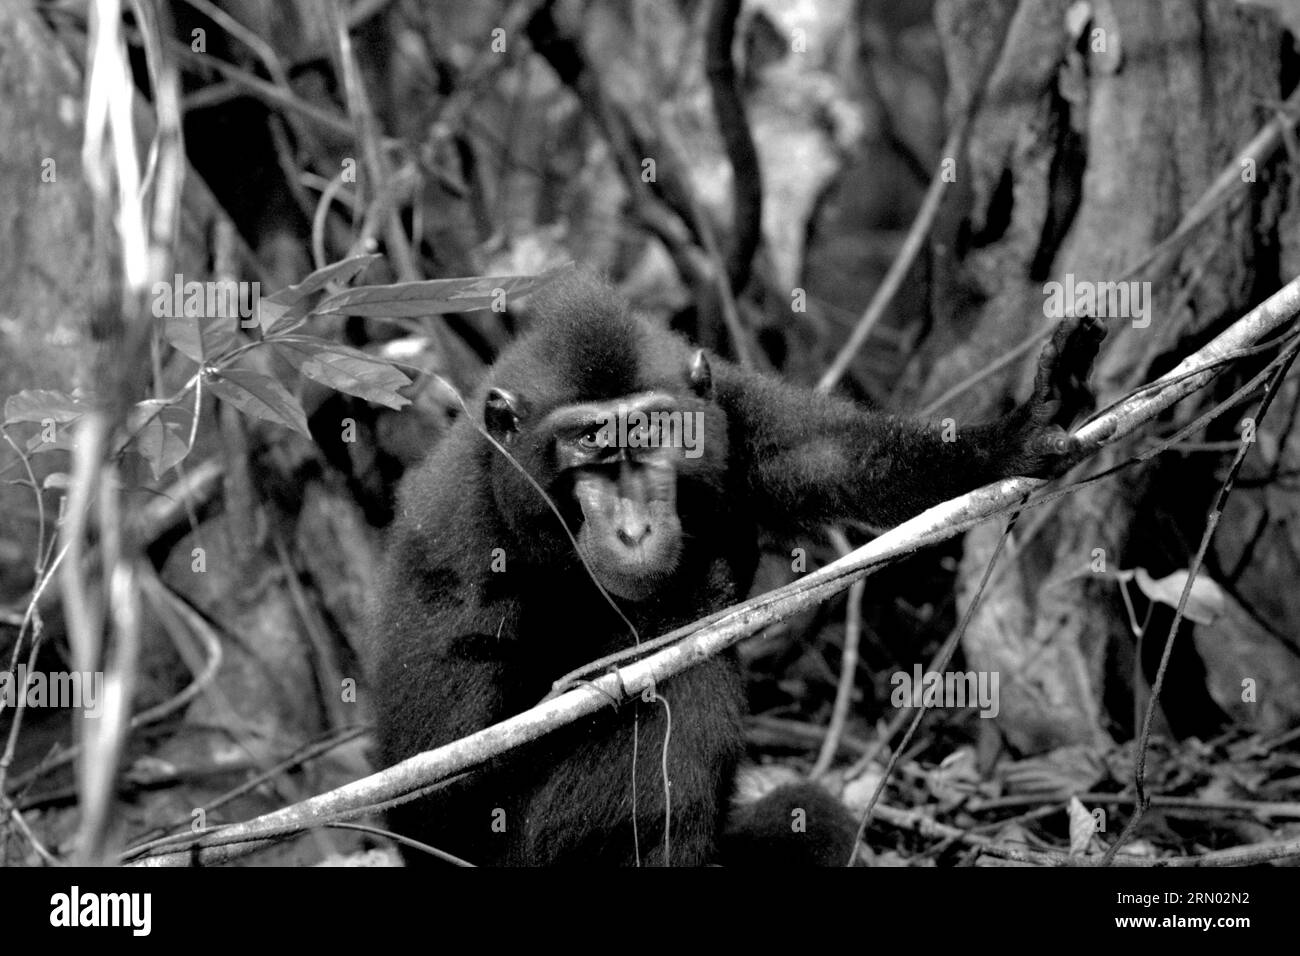 Porträt eines Makaken (Macaca nigra) im Tangkoko-Wald, Nord-Sulawesi, Indonesien. Klimawandel und Krankheiten stellen eine neue Bedrohung für Primaten dar, während Makaken mit Hauben zu den 10 % der Primatenarten gehören, die besonders anfällig für Dürren sind. Ein kürzlich erschienener Bericht ergab, dass die Temperatur im Tangkoko-Wald tatsächlich steigt und der Fruchtbestand insgesamt zurückgeht. Wissenschaftler haben davor gewarnt, dass Veränderungen in Bezug auf die Eignung von Lebensräumen Wildtiere zwingen könnten, sich aus sicheren Lebensräumen zu entfernen, was zu mehr potenziellen Konflikten mit Menschen führen könnte. Stockfoto